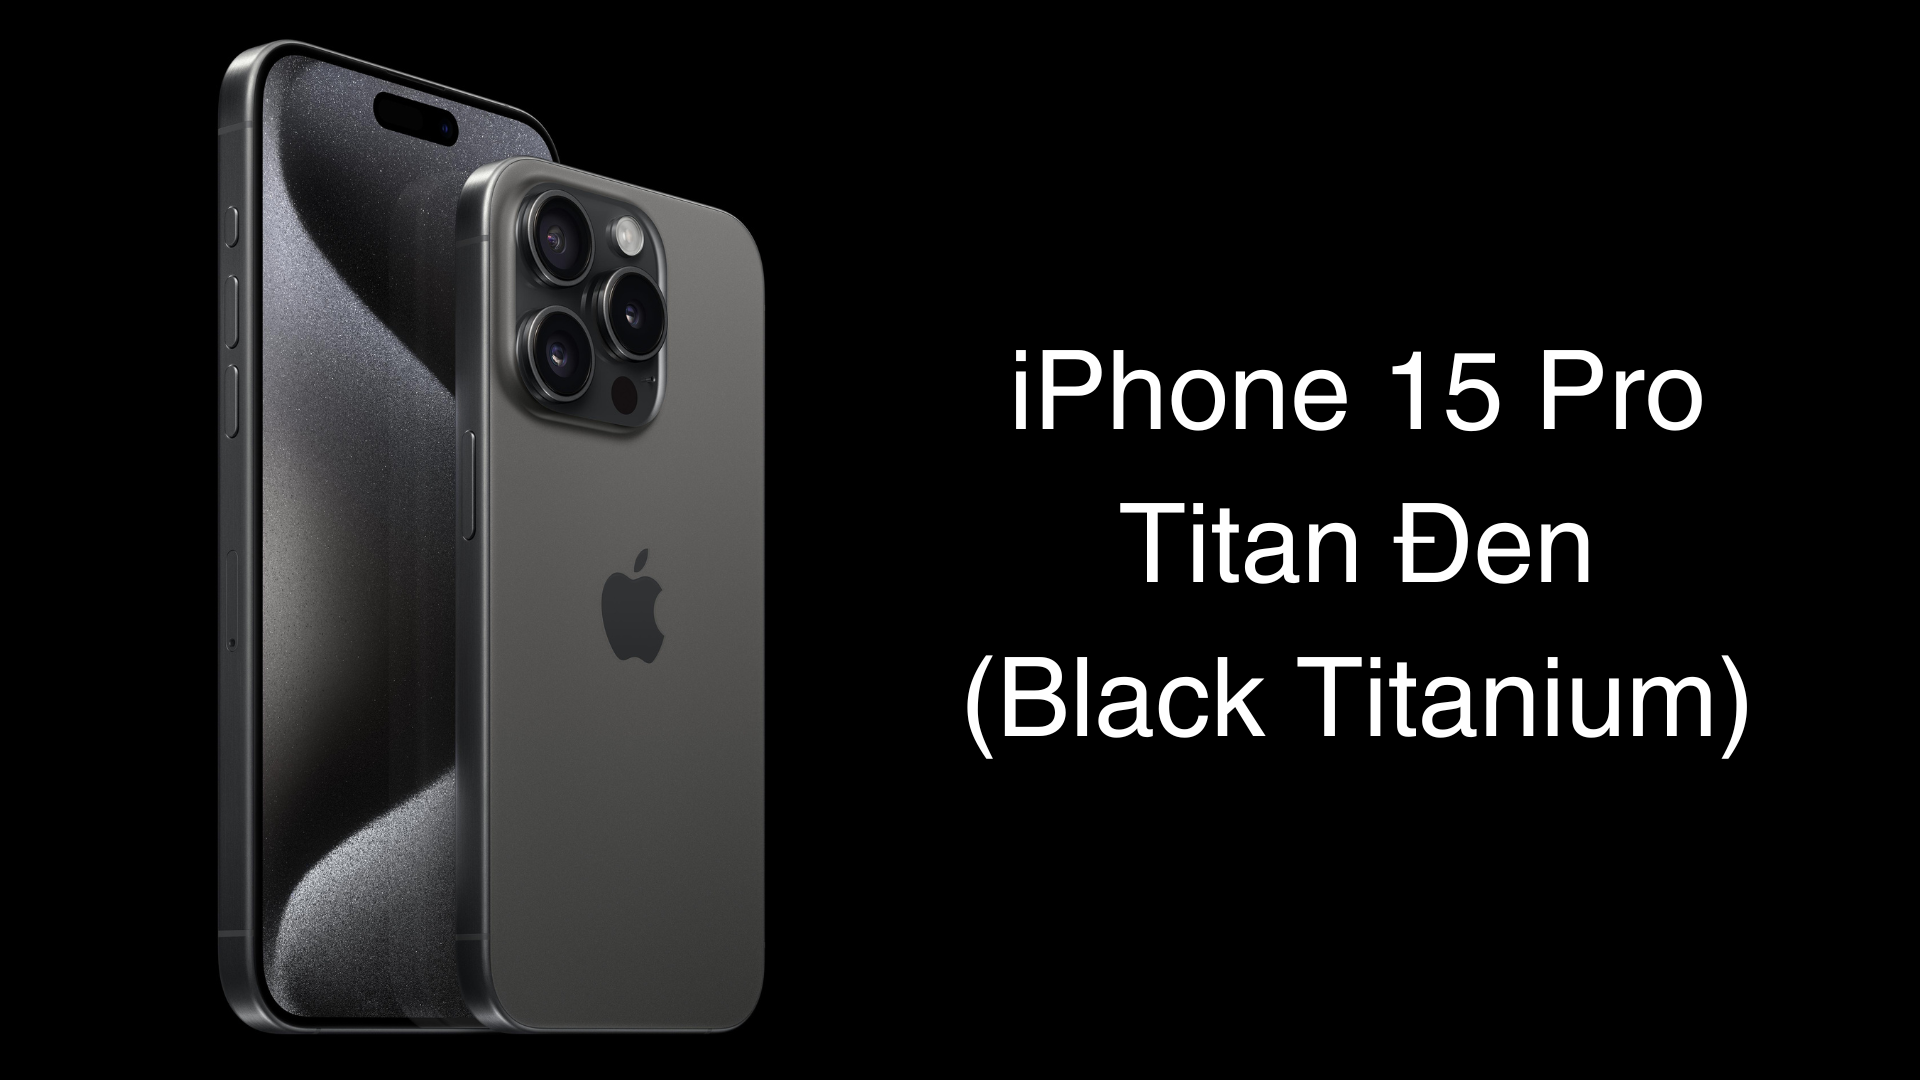 iPhone 15 Pro màu Titan Đen mạnh mẽ, huyền bí nhưng vẫn đầy vẻ tinh tế, sang trọng